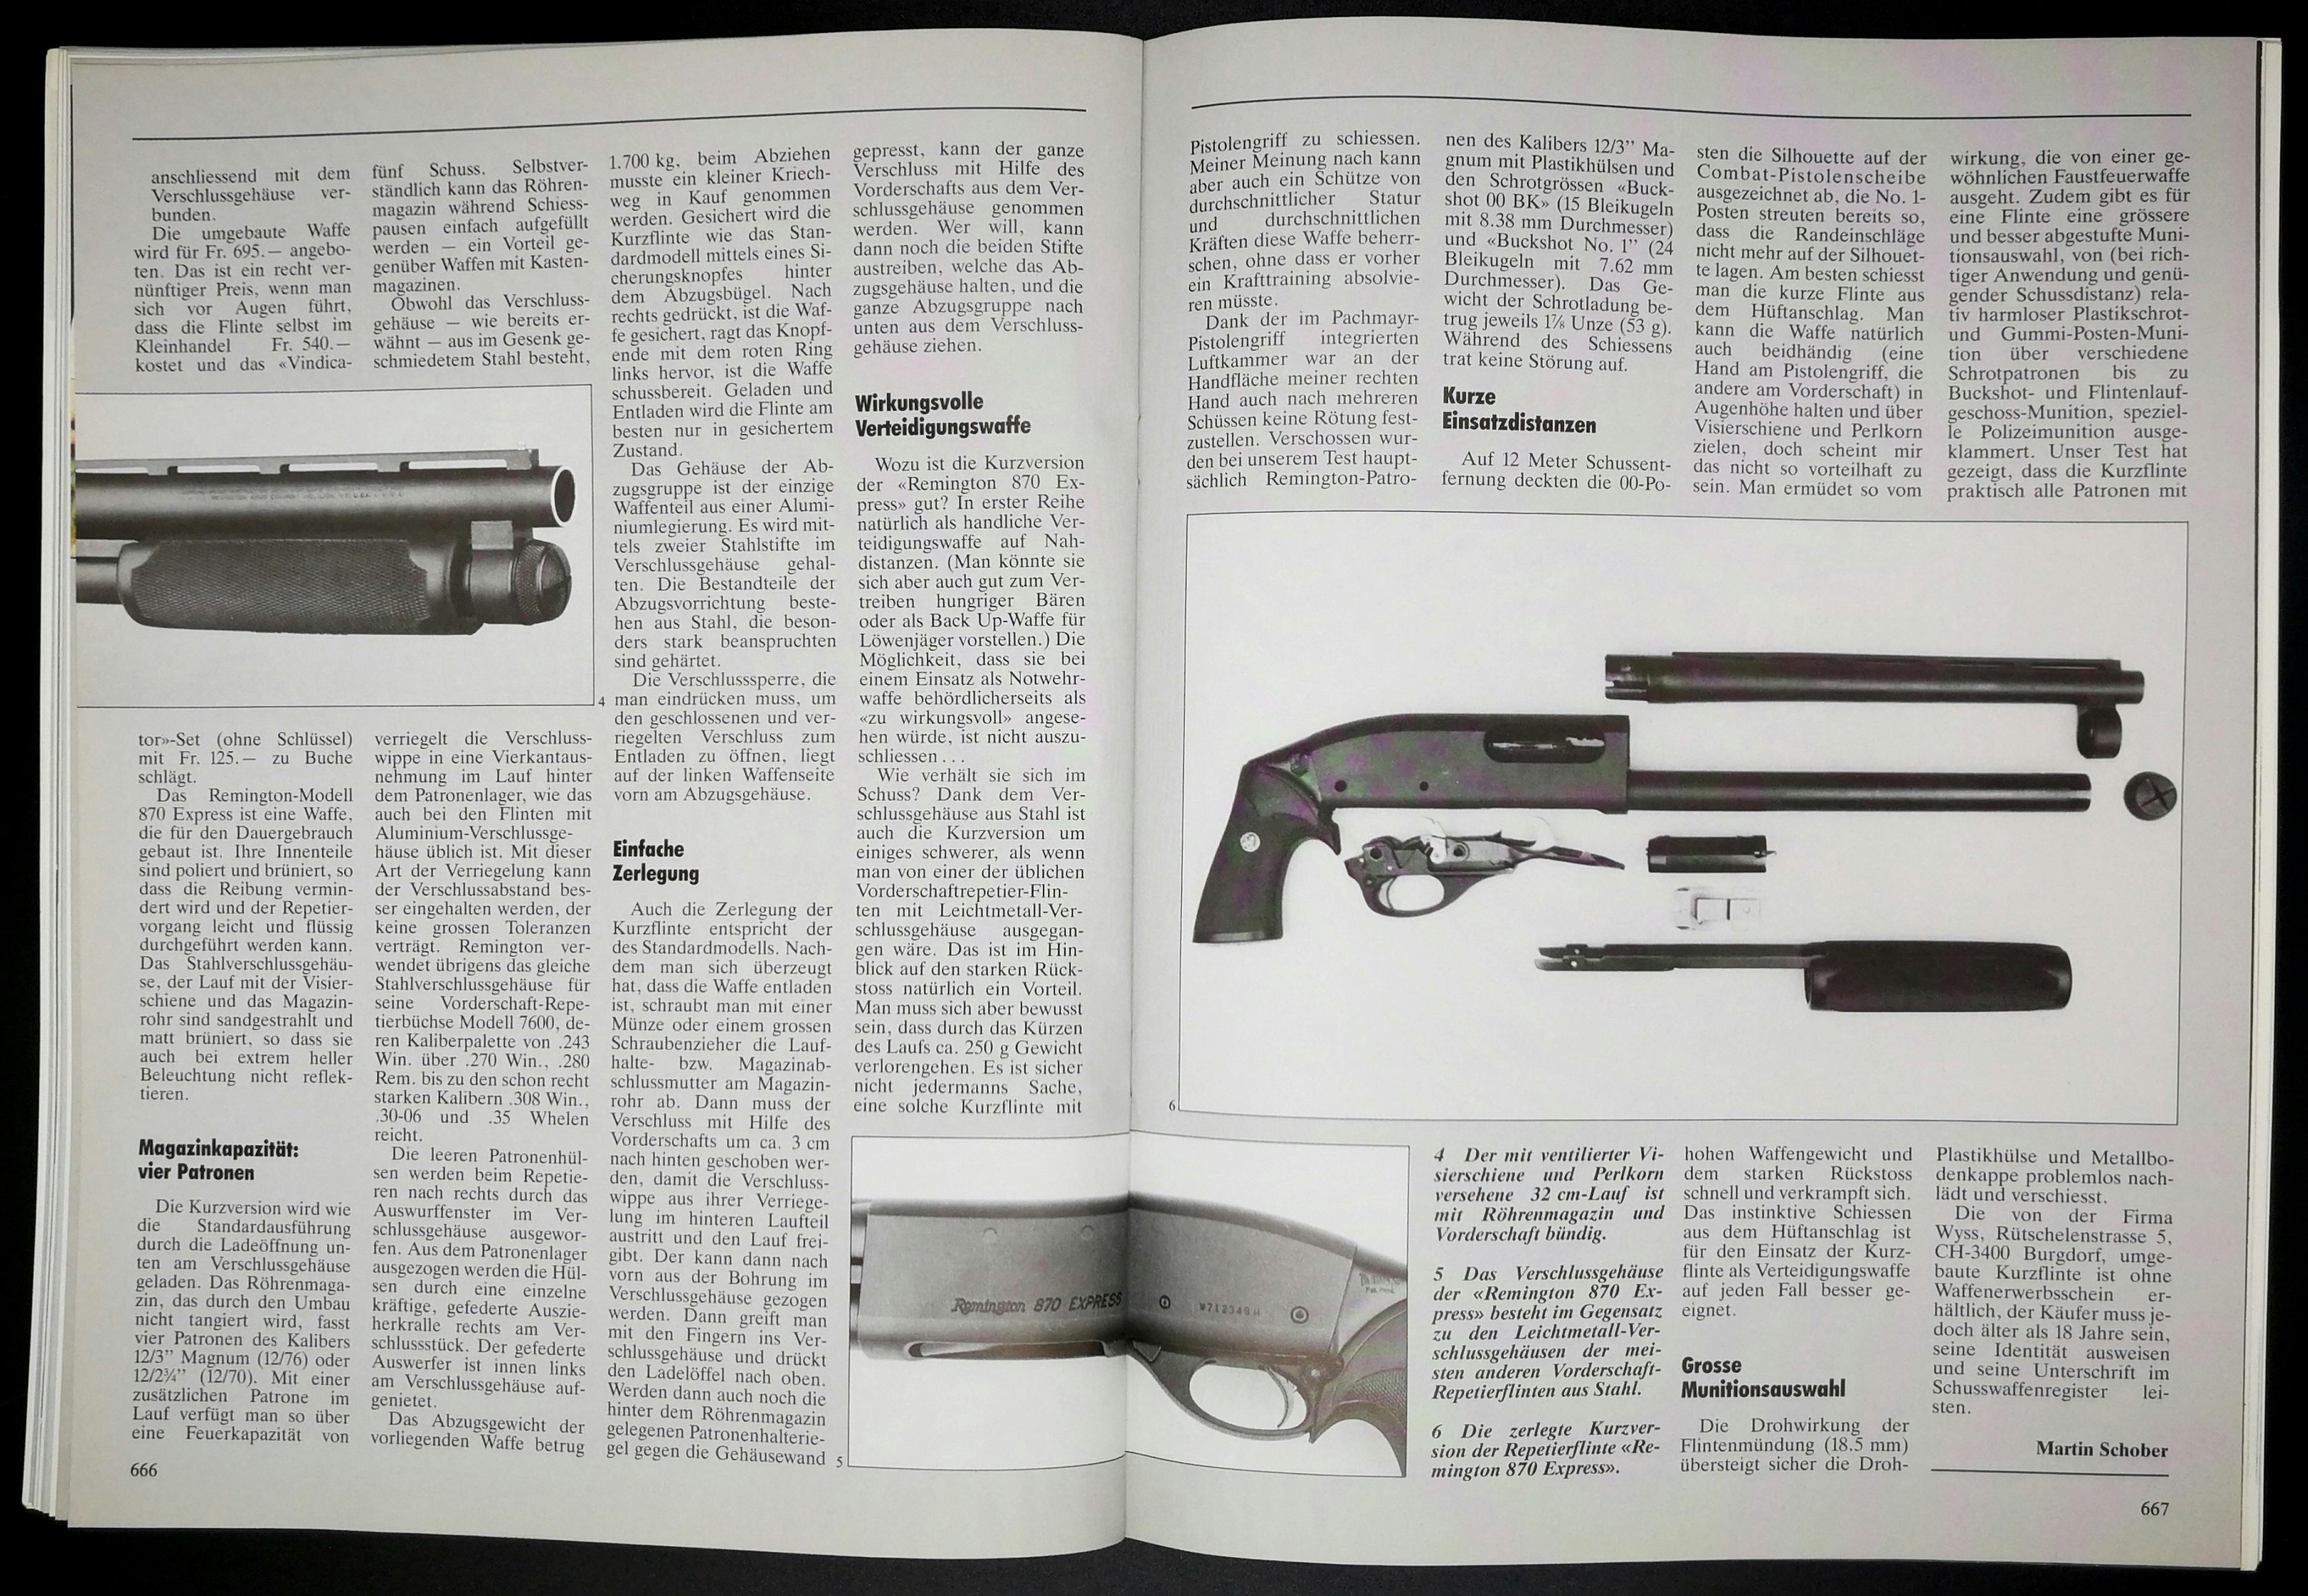 Ah. Die Remington 870 Express. Mangmumflinte mit viel zu kurzem Lauf, die sich auch in unserem Haushalt findet. Angenehmer zu schiessen, als man denkt!
